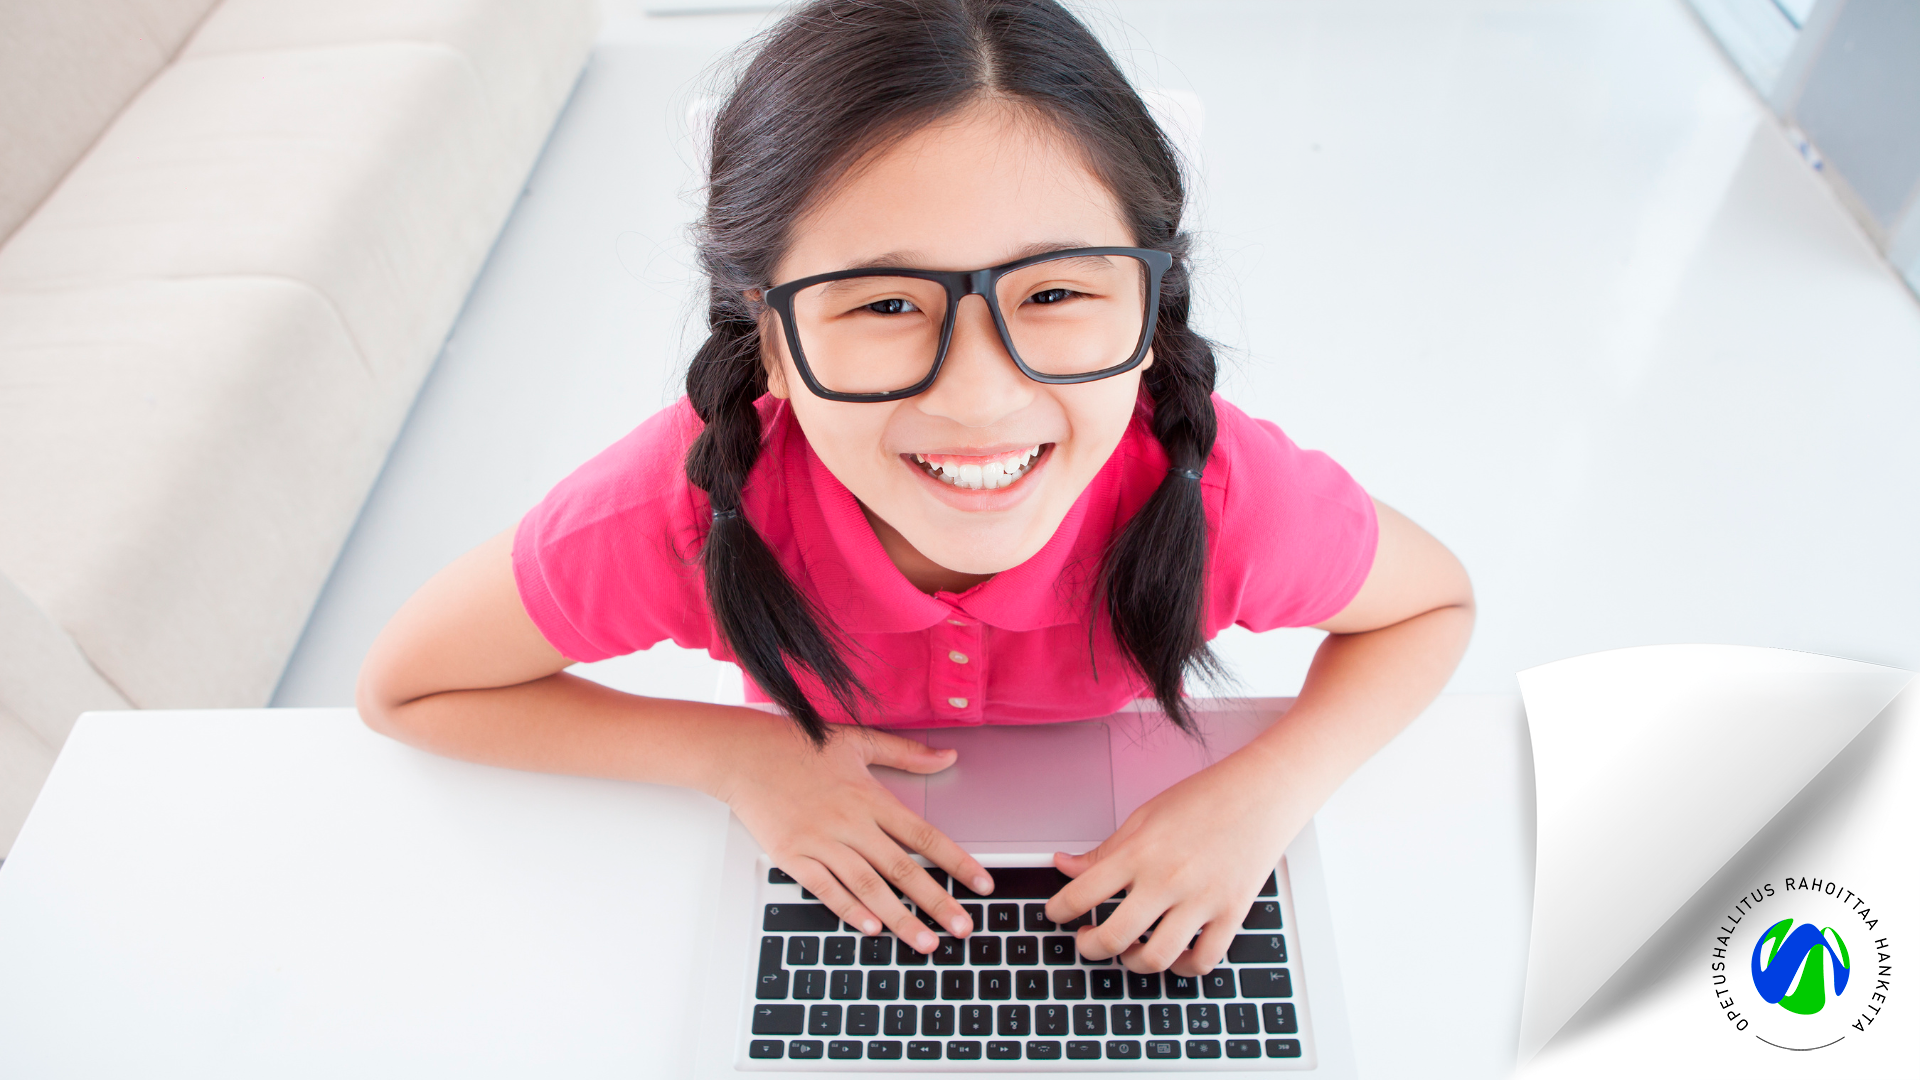 Lapsi katsoo ylöspäin kohti kameraa kädet tietokoneen näppäimistöllä ja hymyilee. OPH rahoittaa hanketta -logo alanurkassa.